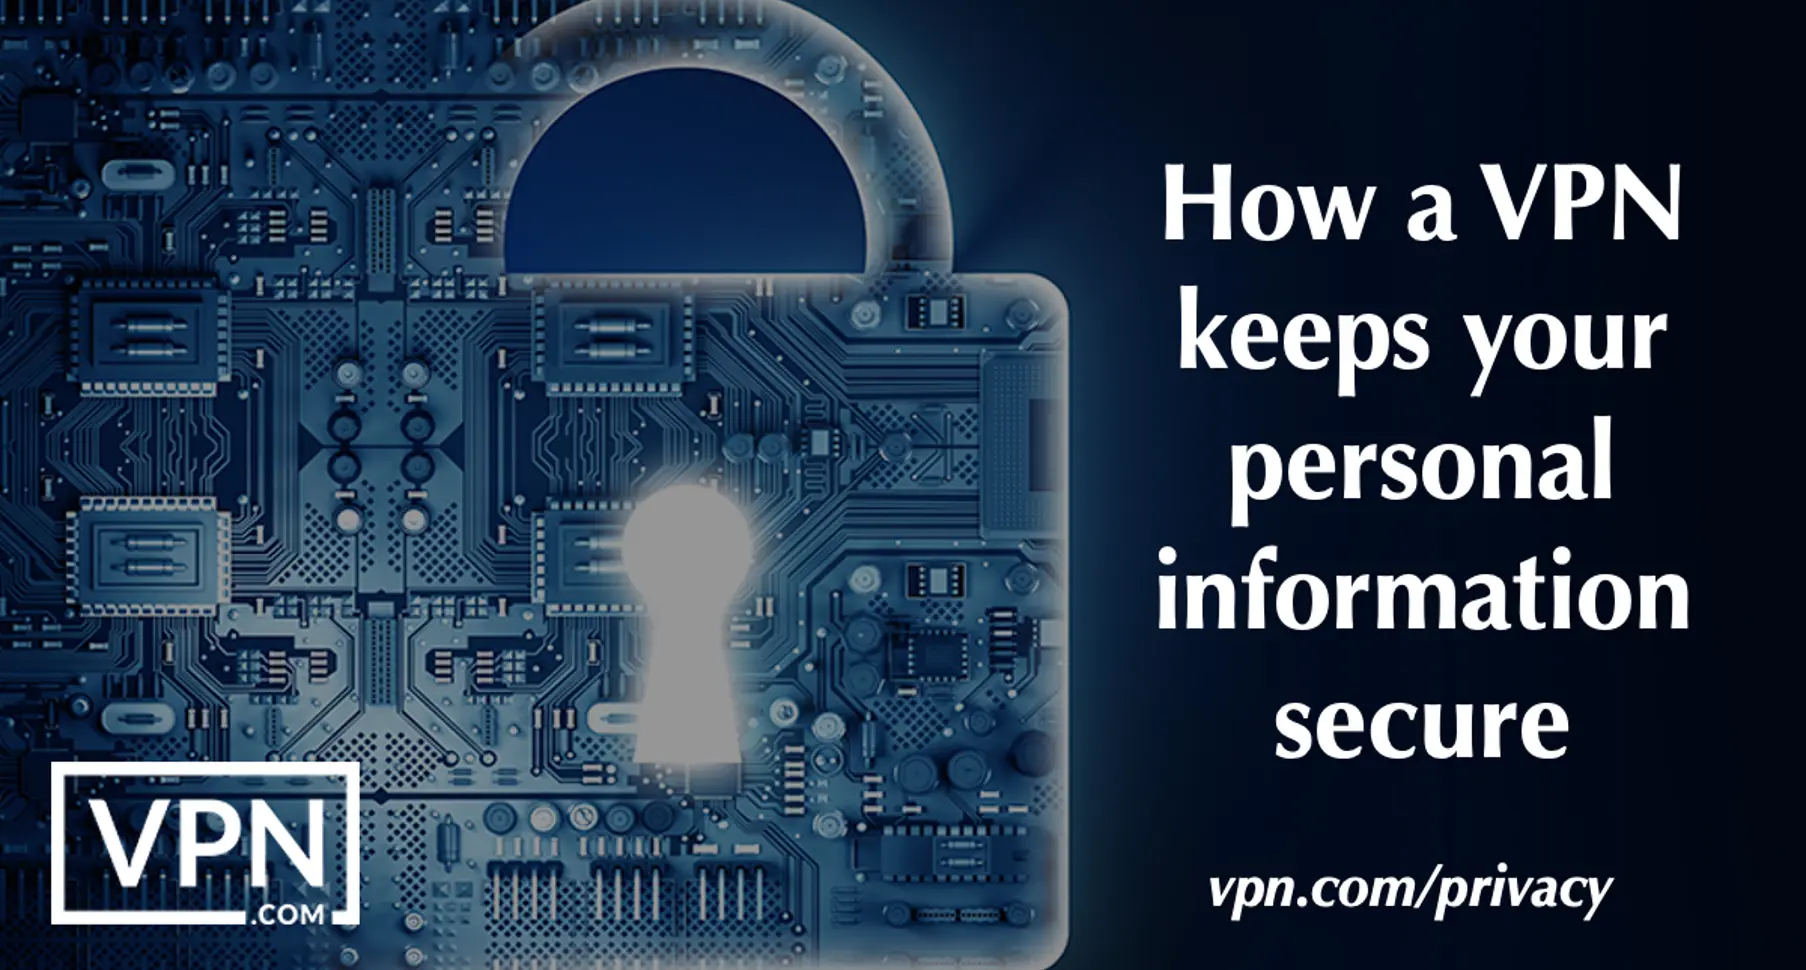 Hvordan en VPN til beskyttelse af personlige oplysninger beskytter dine personlige oplysninger.